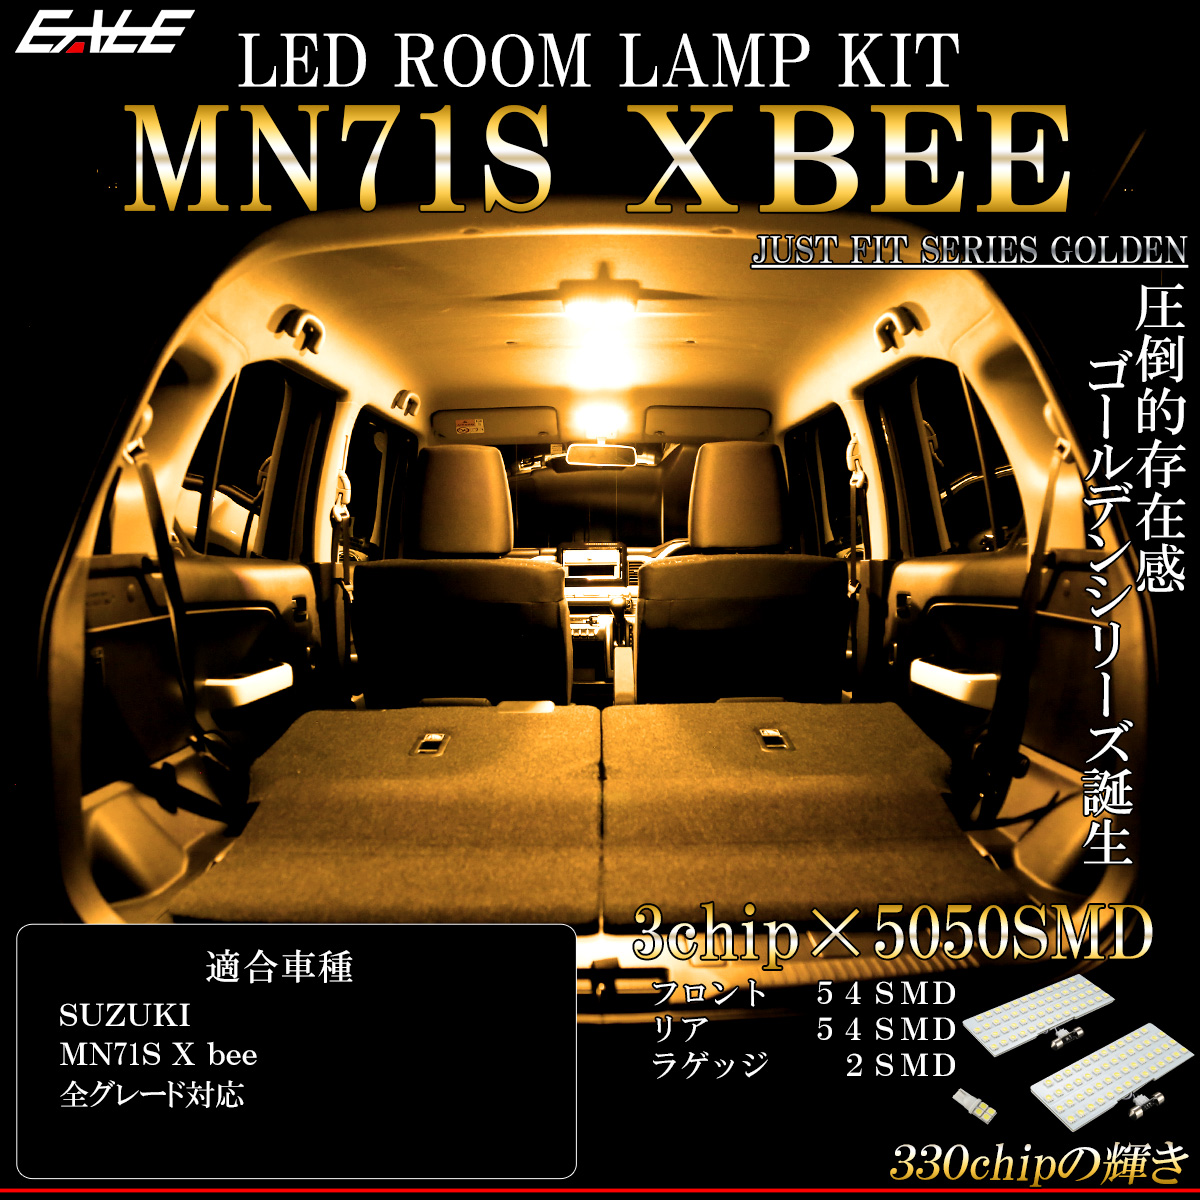 ネコポス可】 MN71S XBEE クロスビー LED ルームランプ 電球色 3000K ウォームホワイト X BEE ハイブリッド R-472